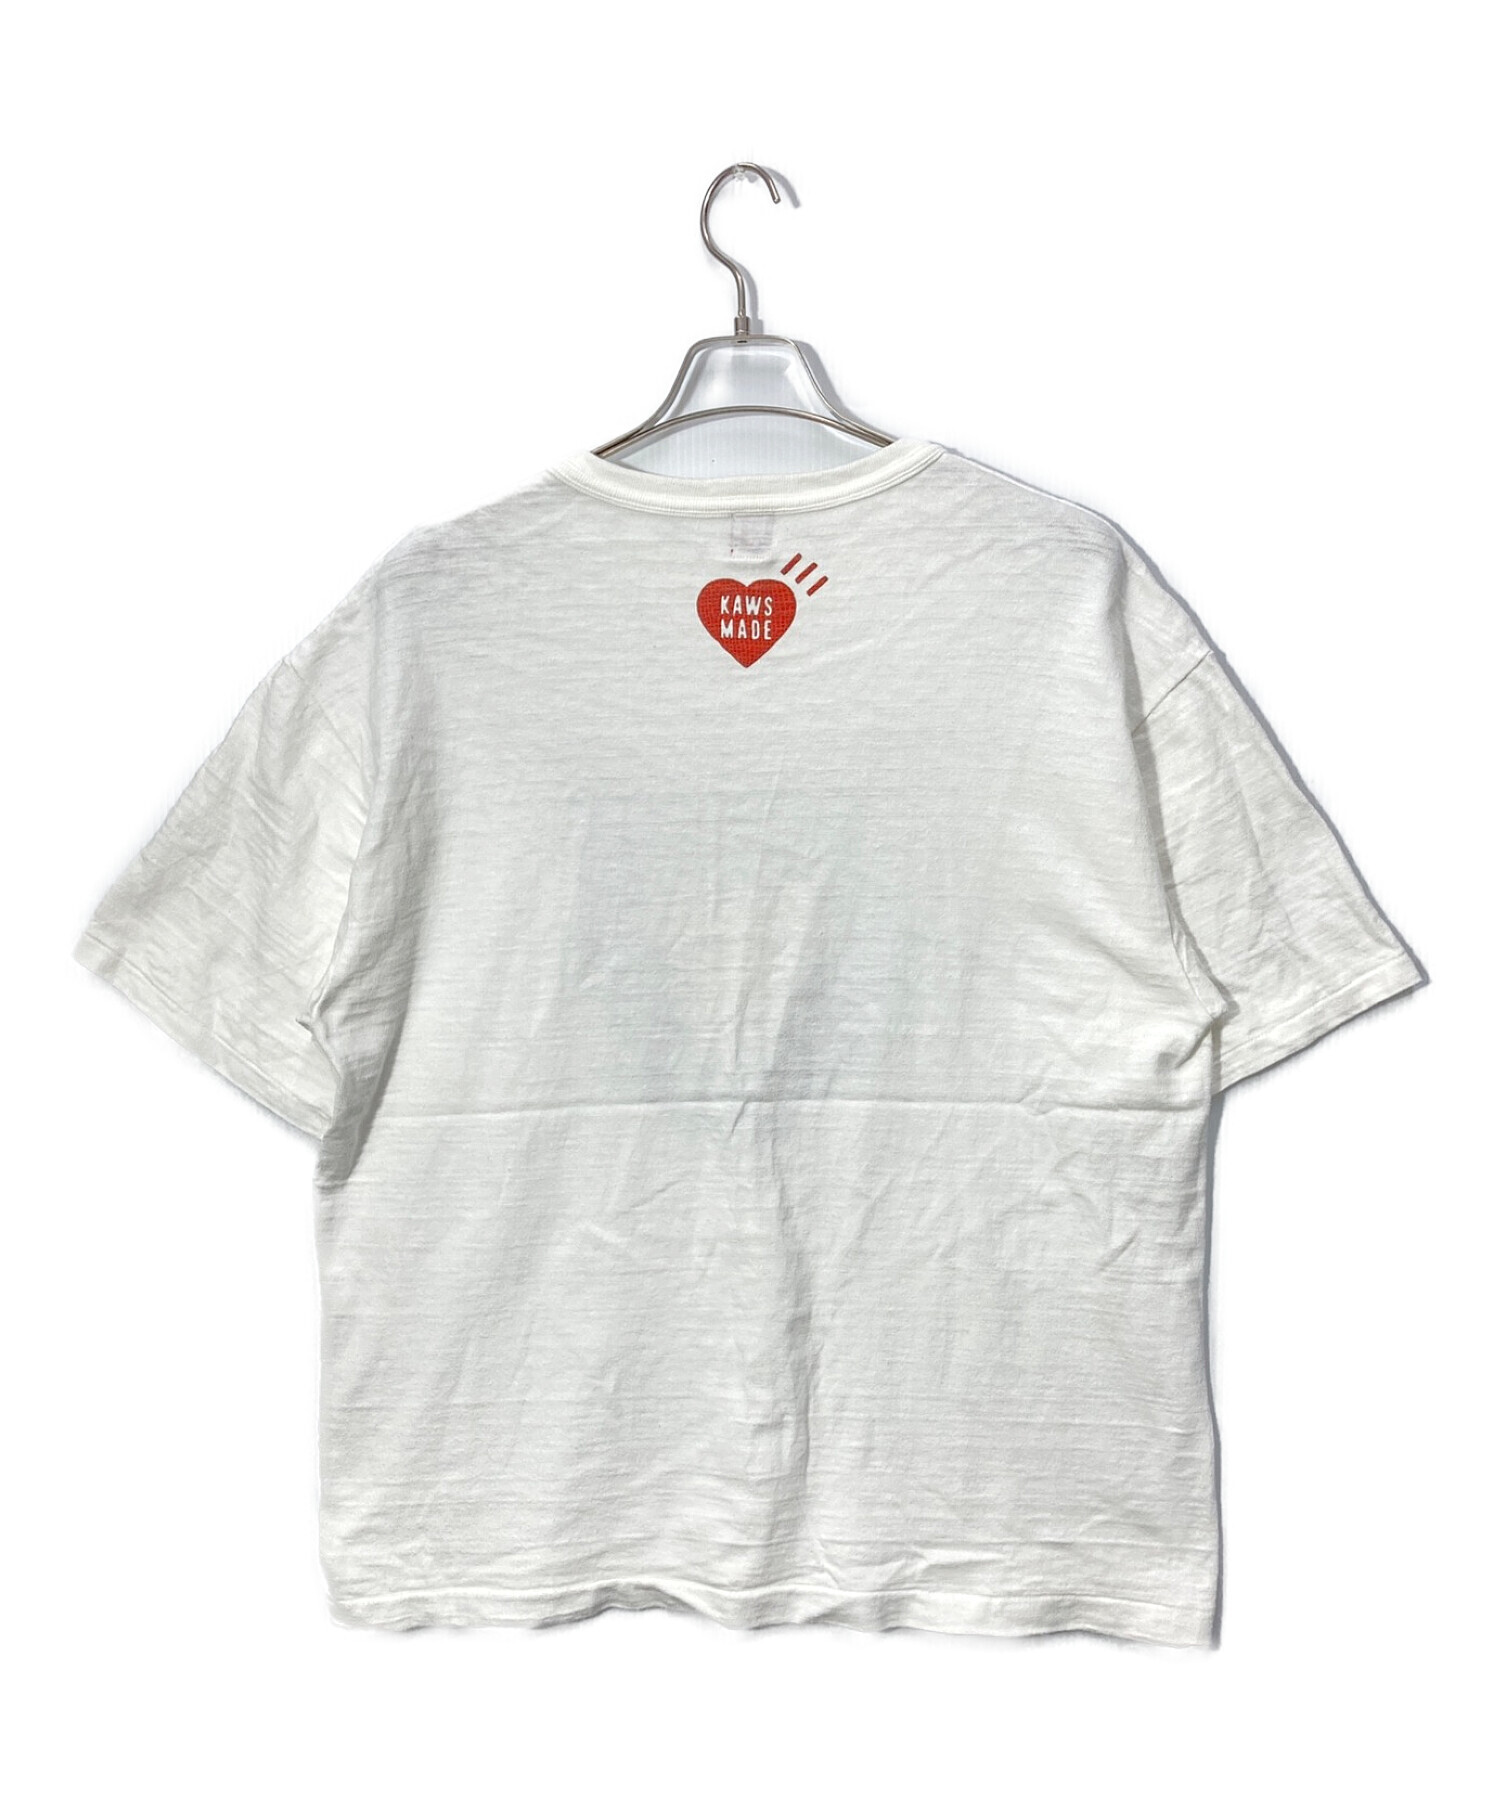 HUMAN MADE KAWS T Shirt #1 white 2XL